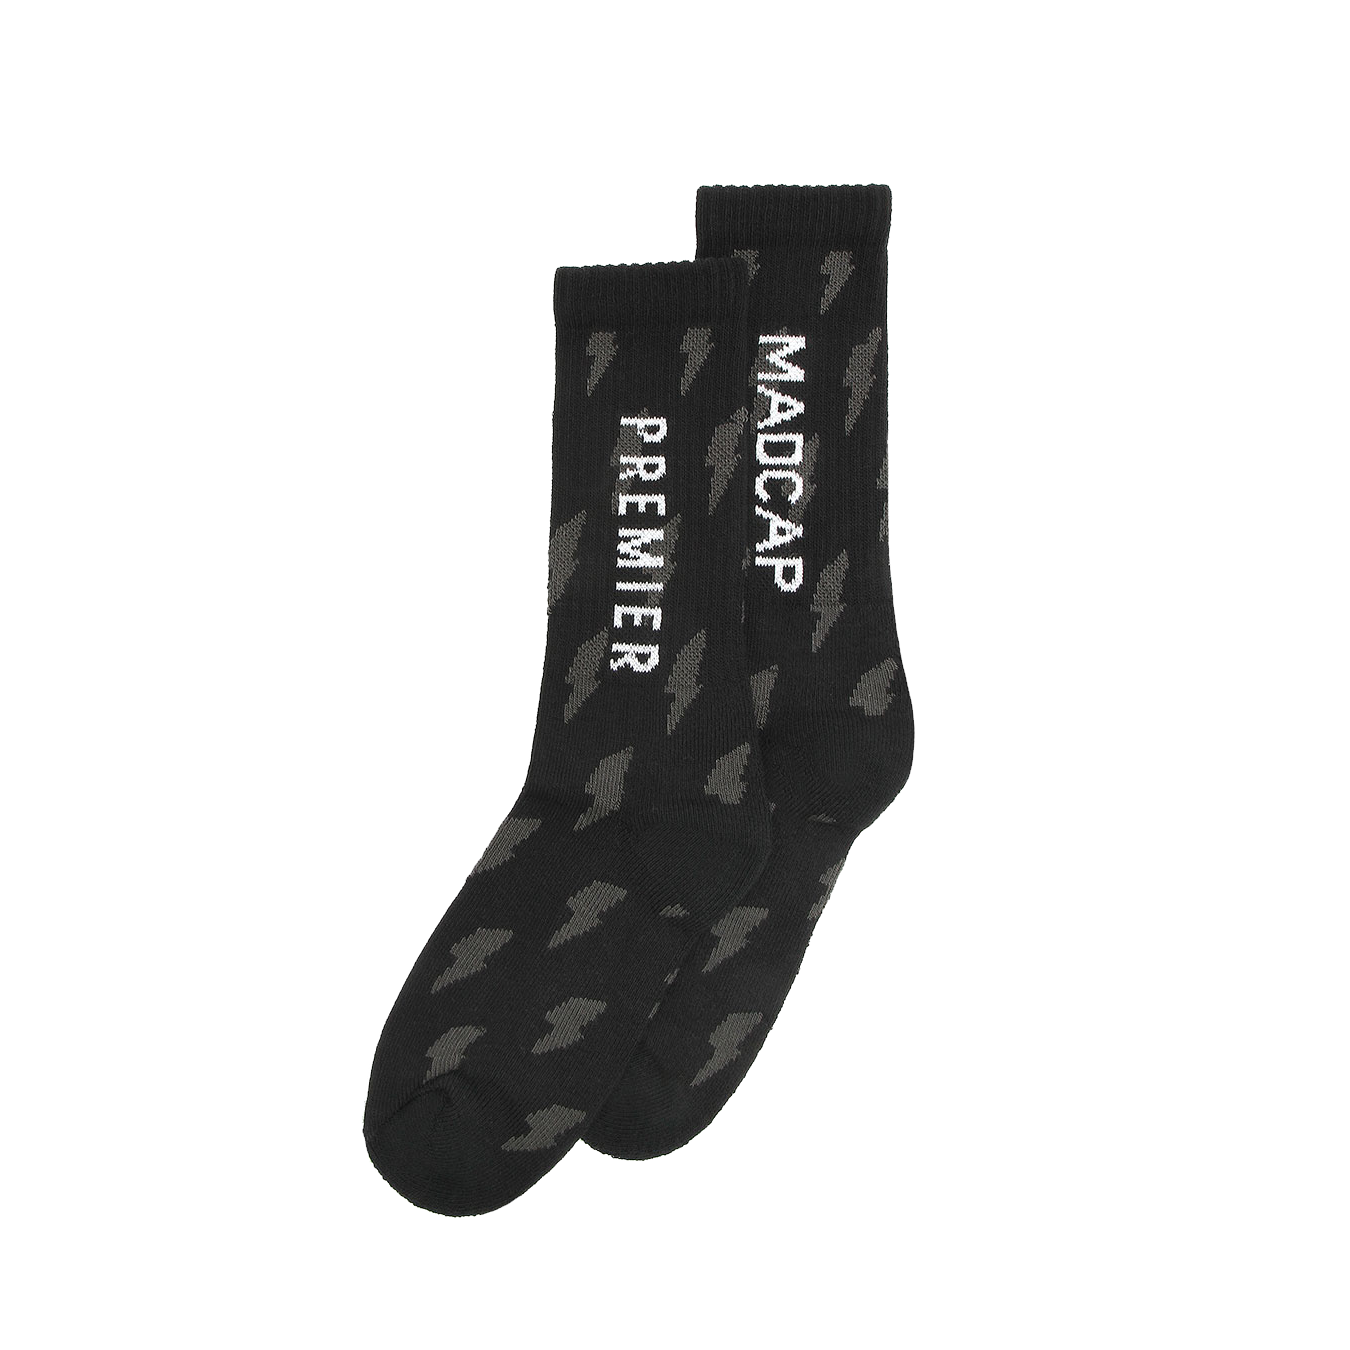 Madcap Premier socks